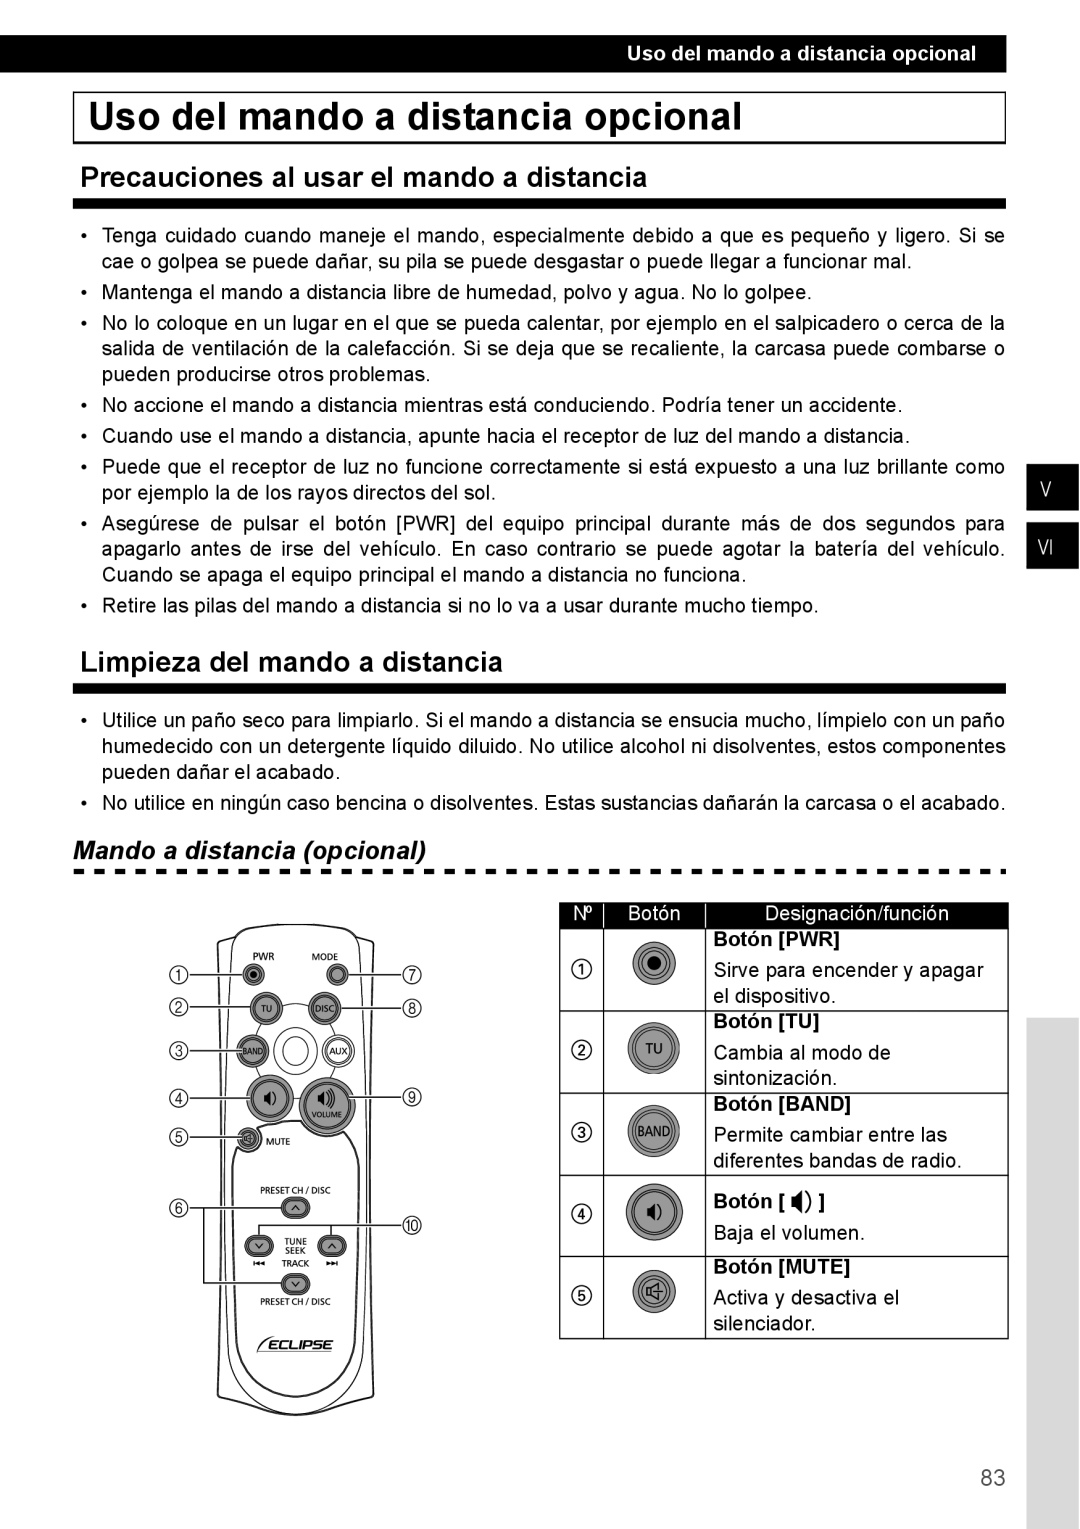 Eclipse - Fujitsu Ten CD1000 manual Uso del mando a distancia opcional, Precauciones al usar el mando a distancia, Nº Botón 